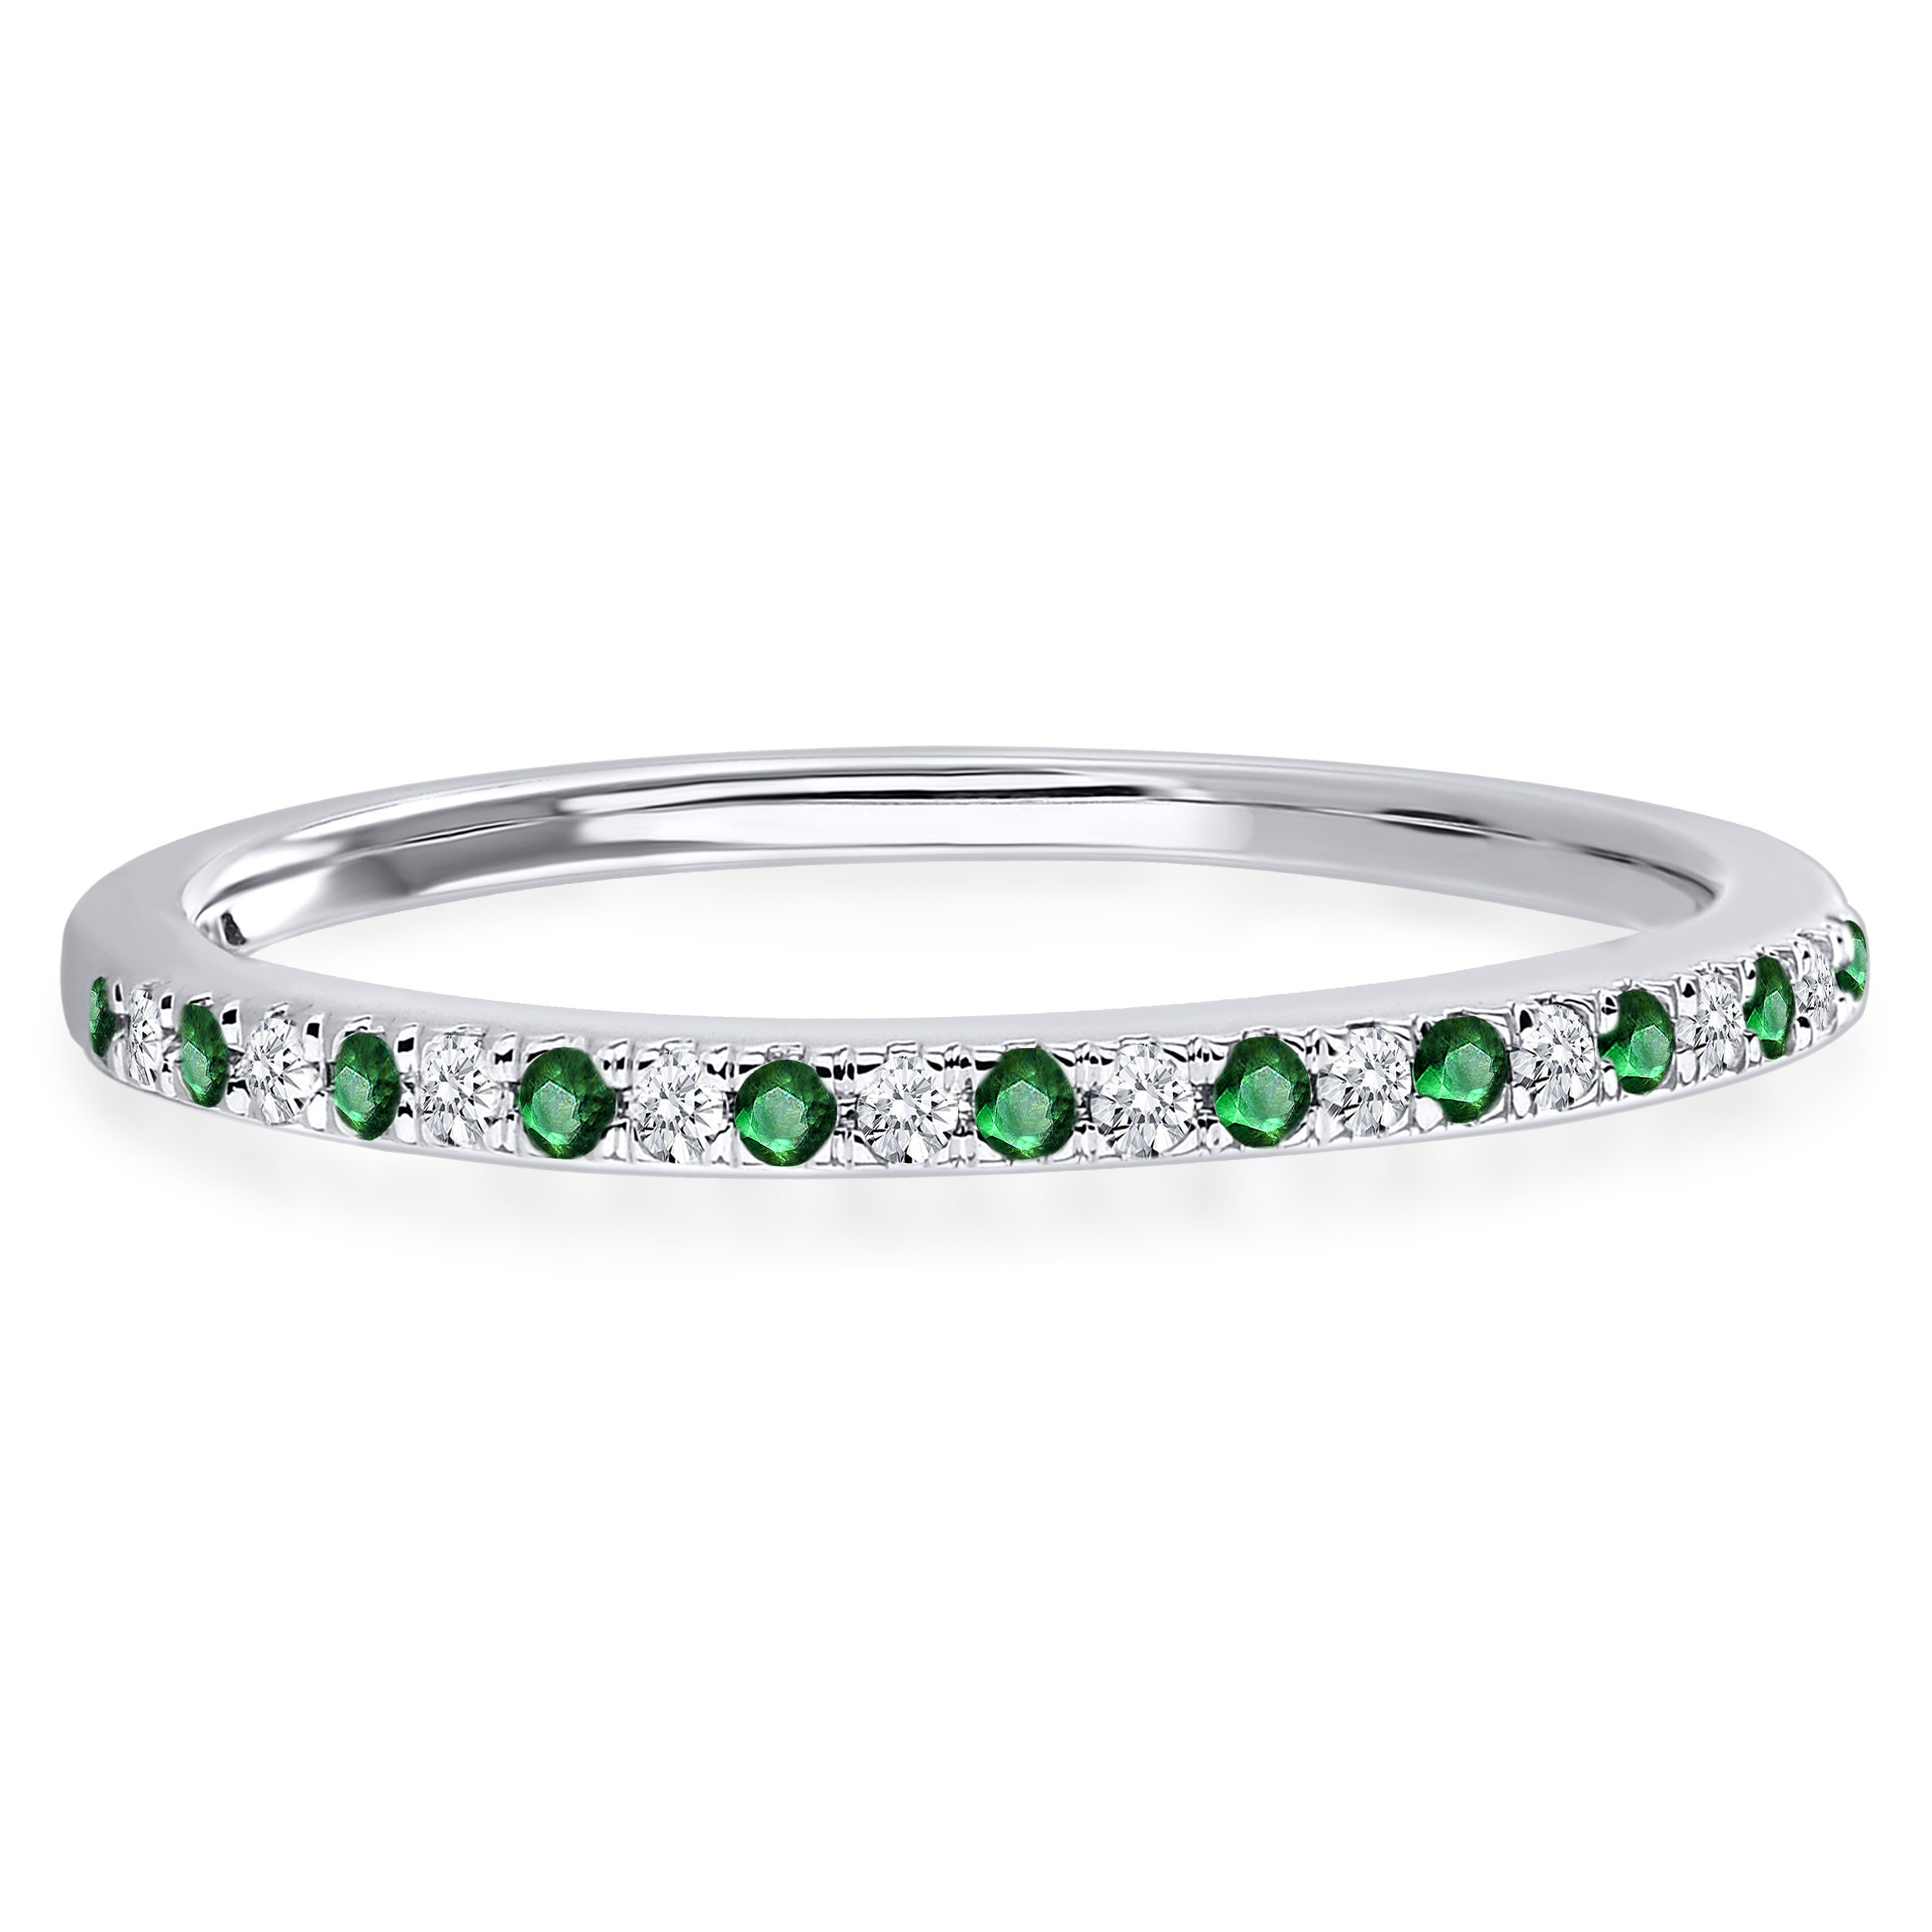 Alternate Green Emerald & White Diamond Half Eternity Wedding | Etsy